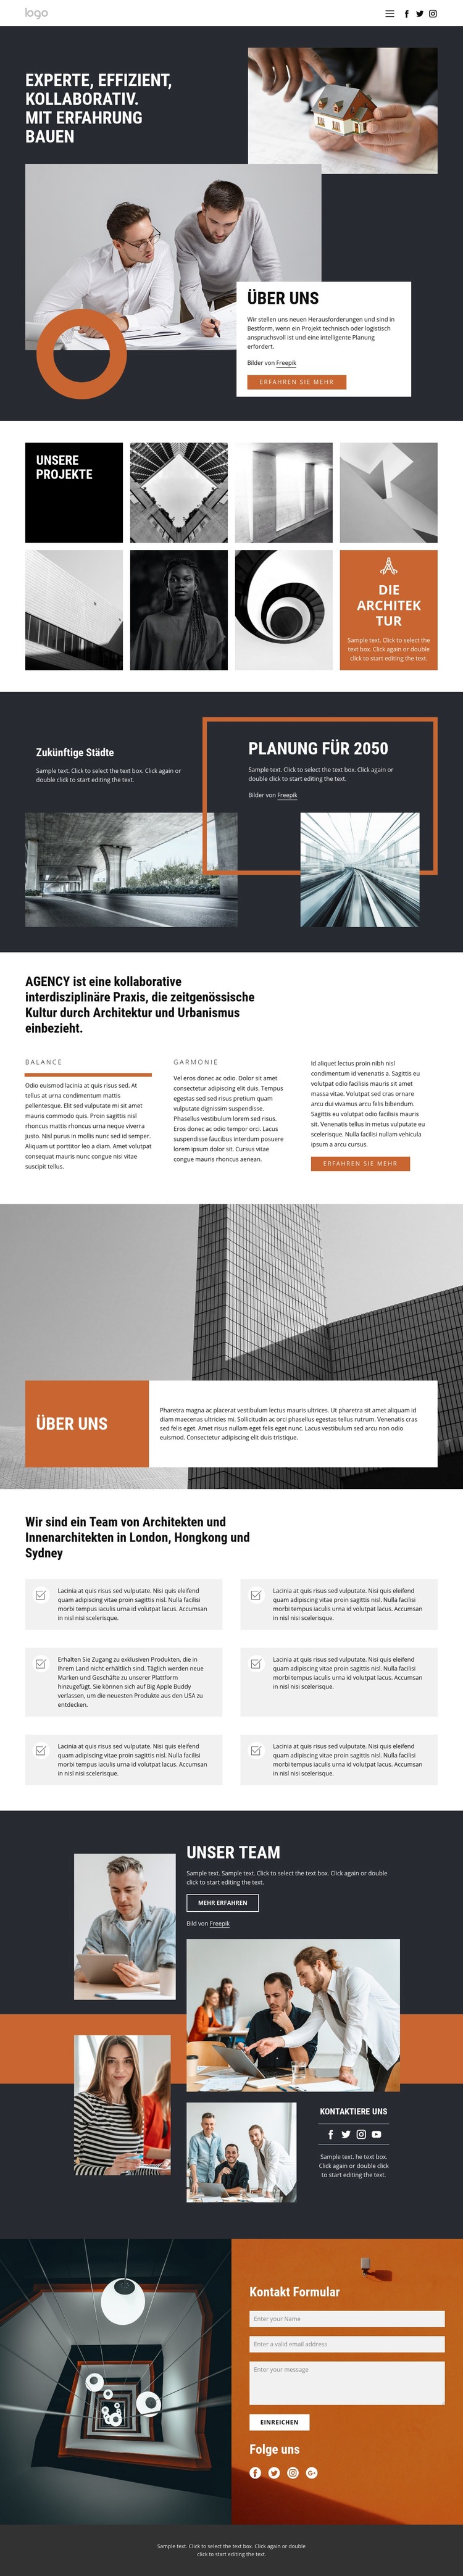 Architekten Designgruppe Website design